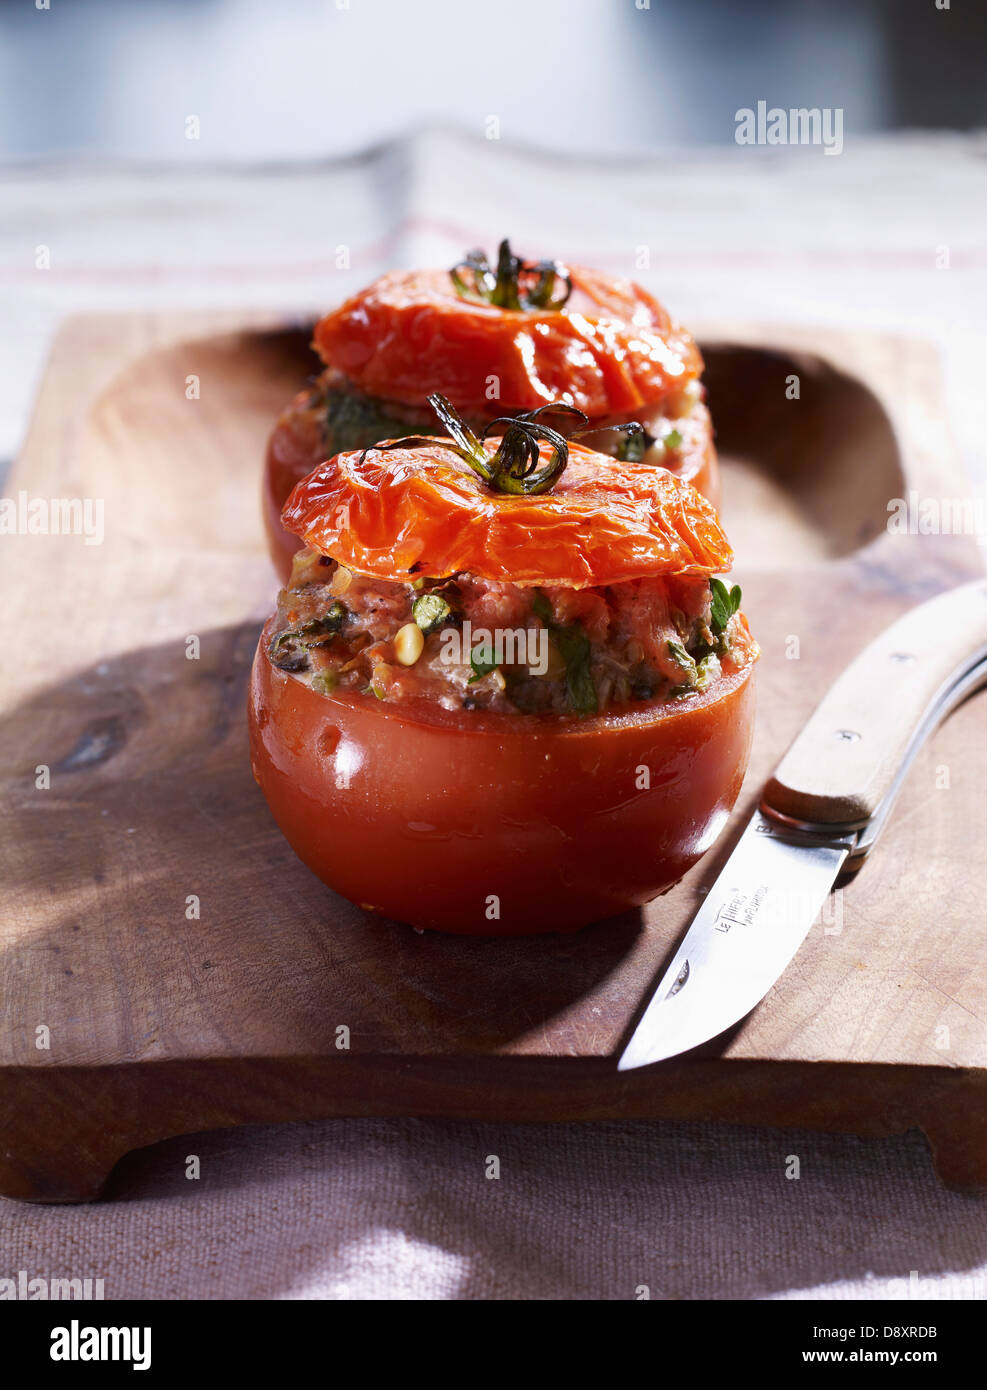 Stuffed tomatoes Stock Photo